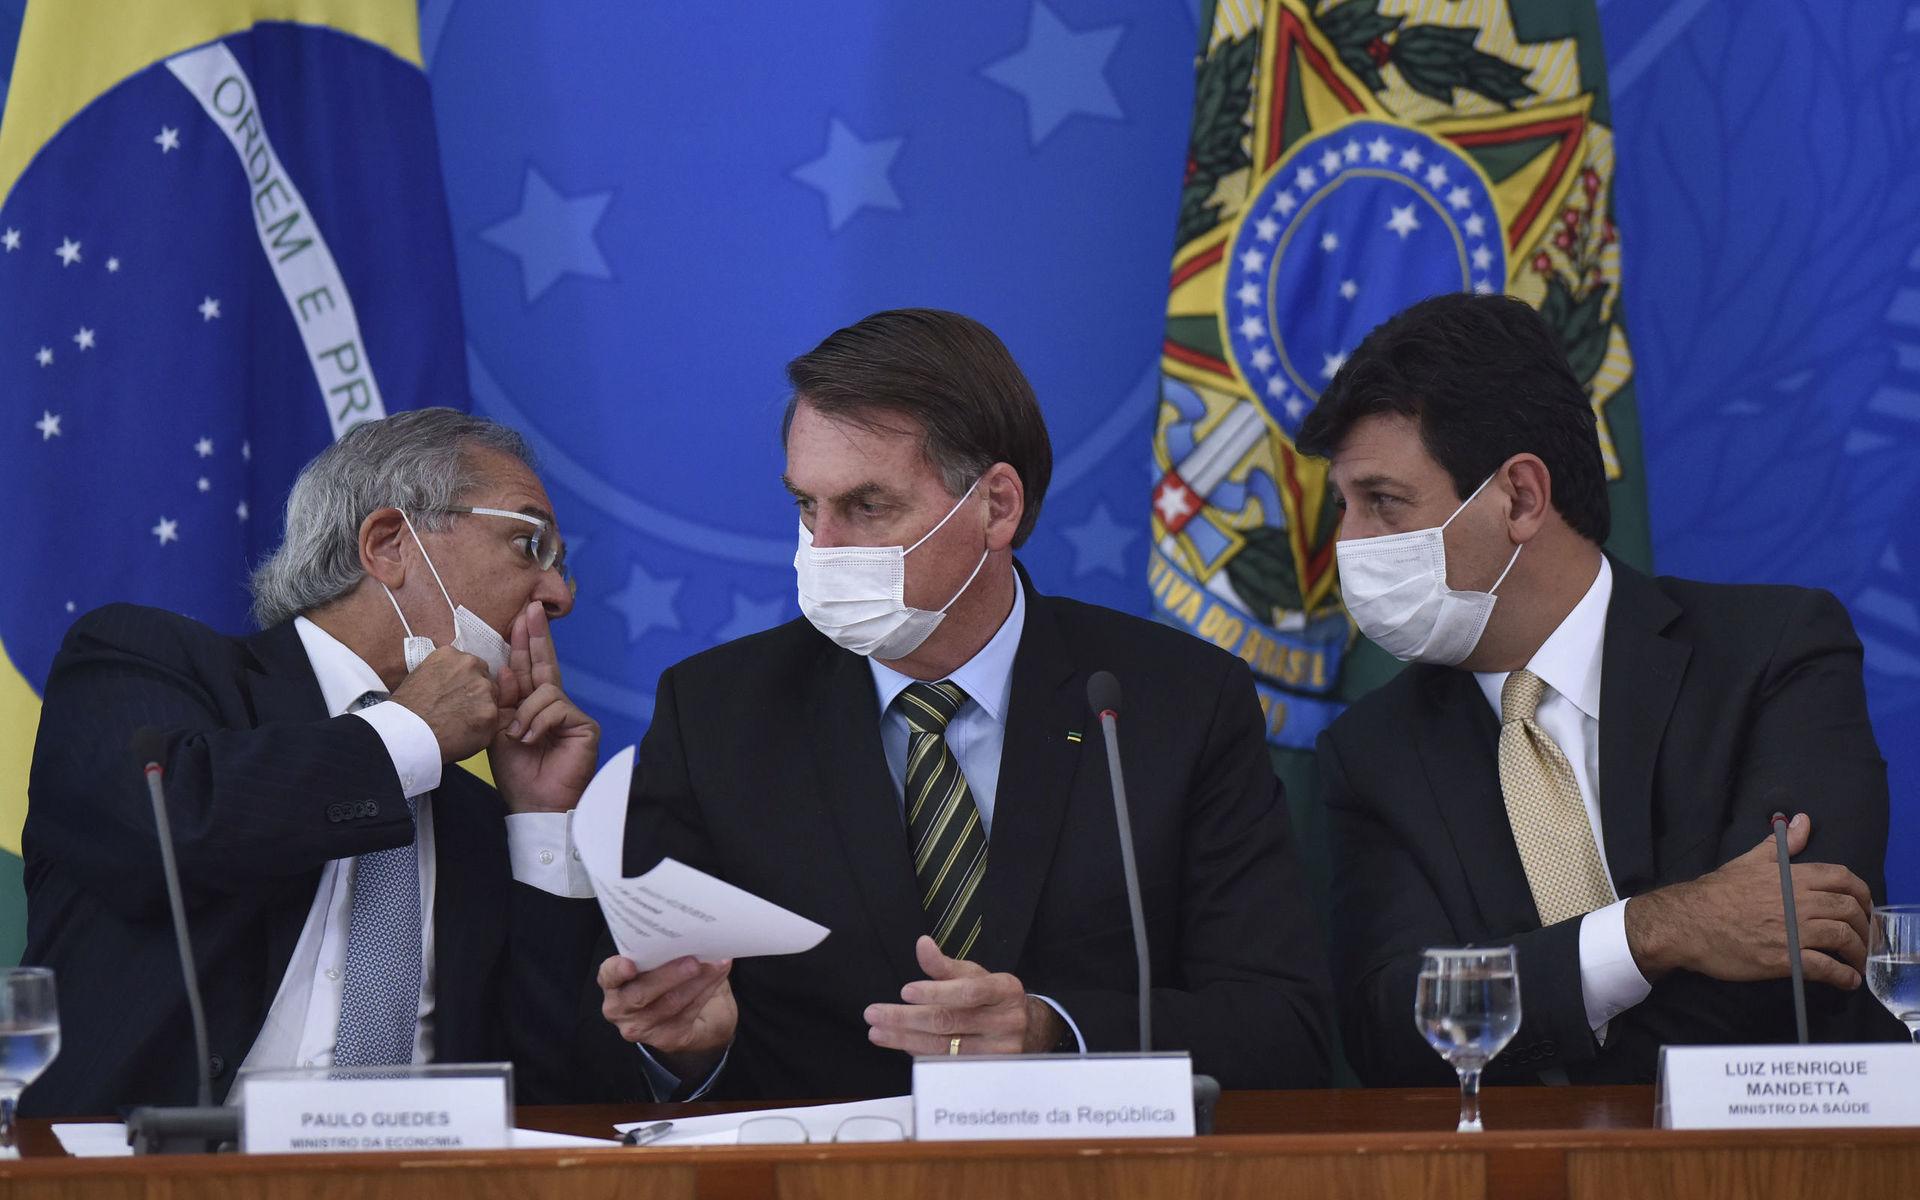 Brasiliens president Jair Bolsonaro var tidigt ute och försökte dämpa oron för det nya coronaviruset.